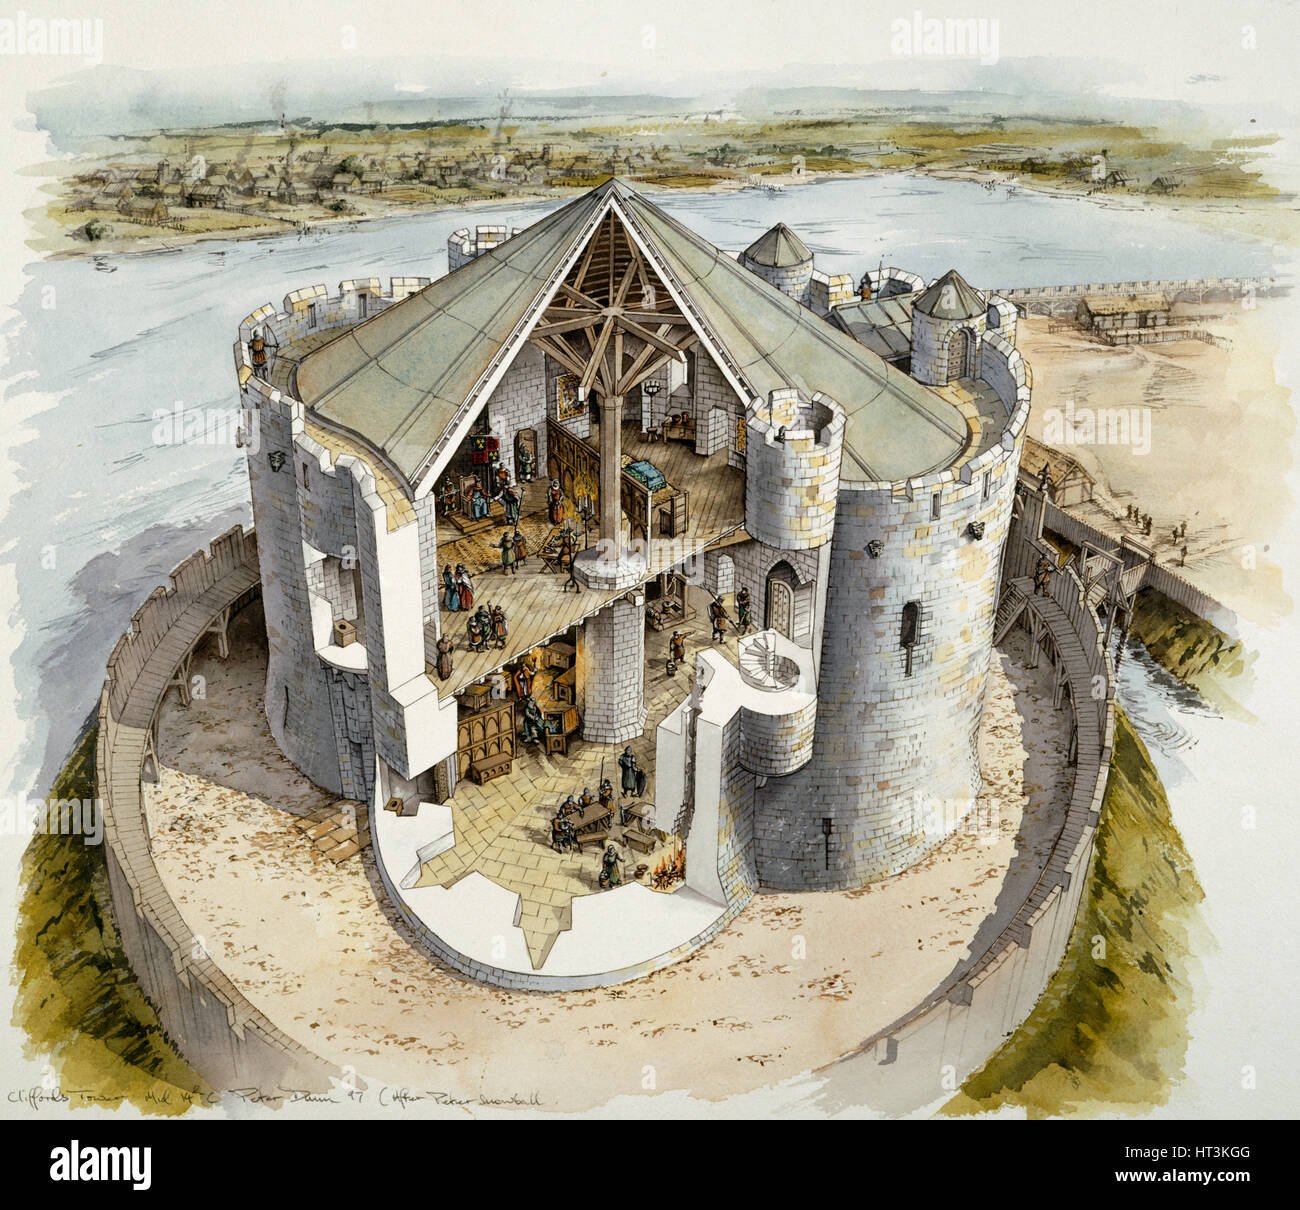 Построена в 14 веке. Донжон в средневековом замке. Донжон башня в средневековье. Донжон в замке средневековья. Феодальный замок донжон.